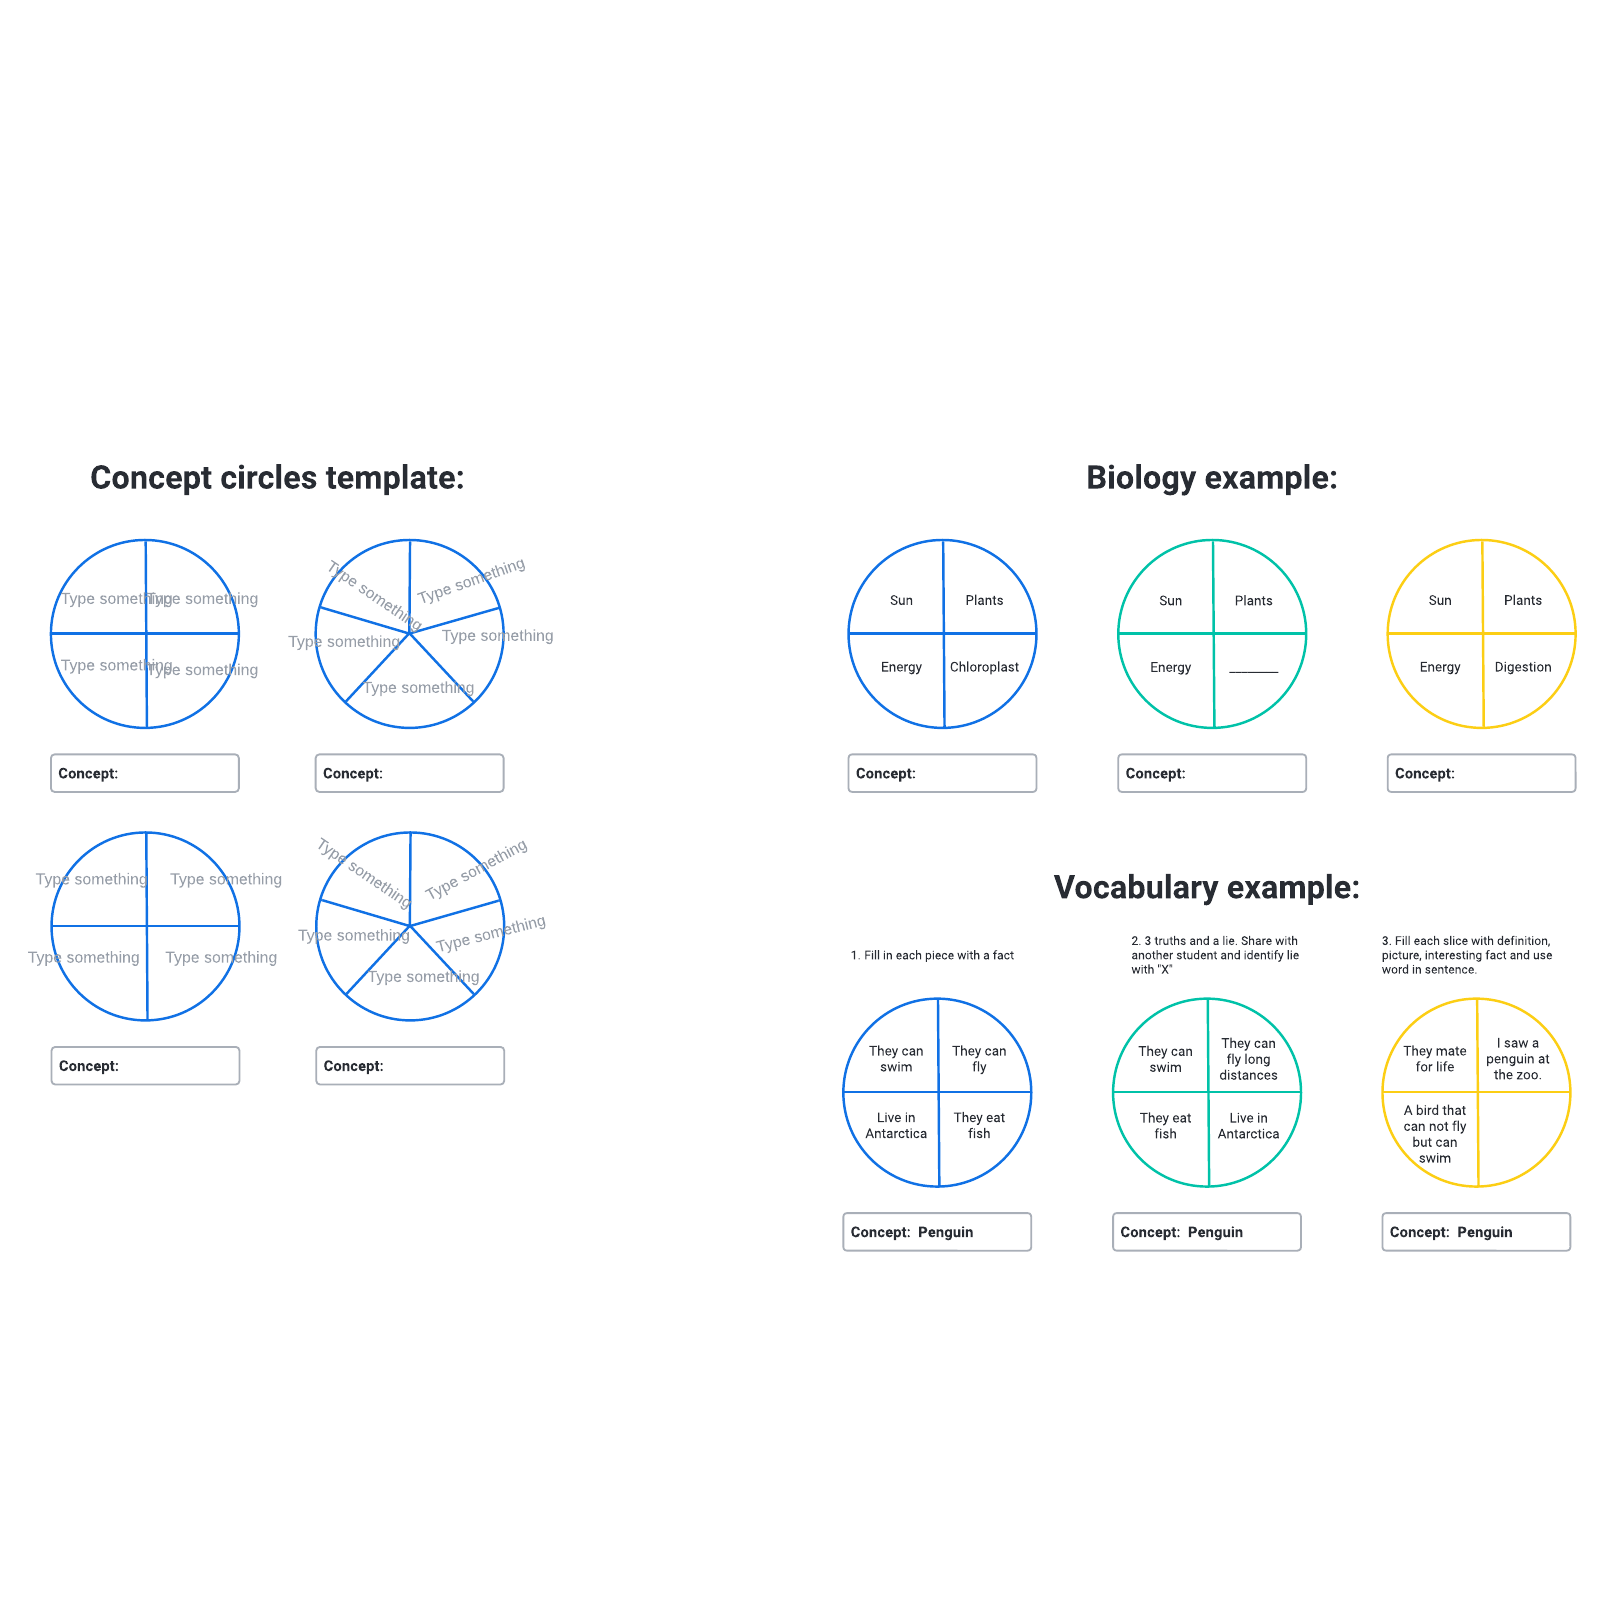 Concept circles example